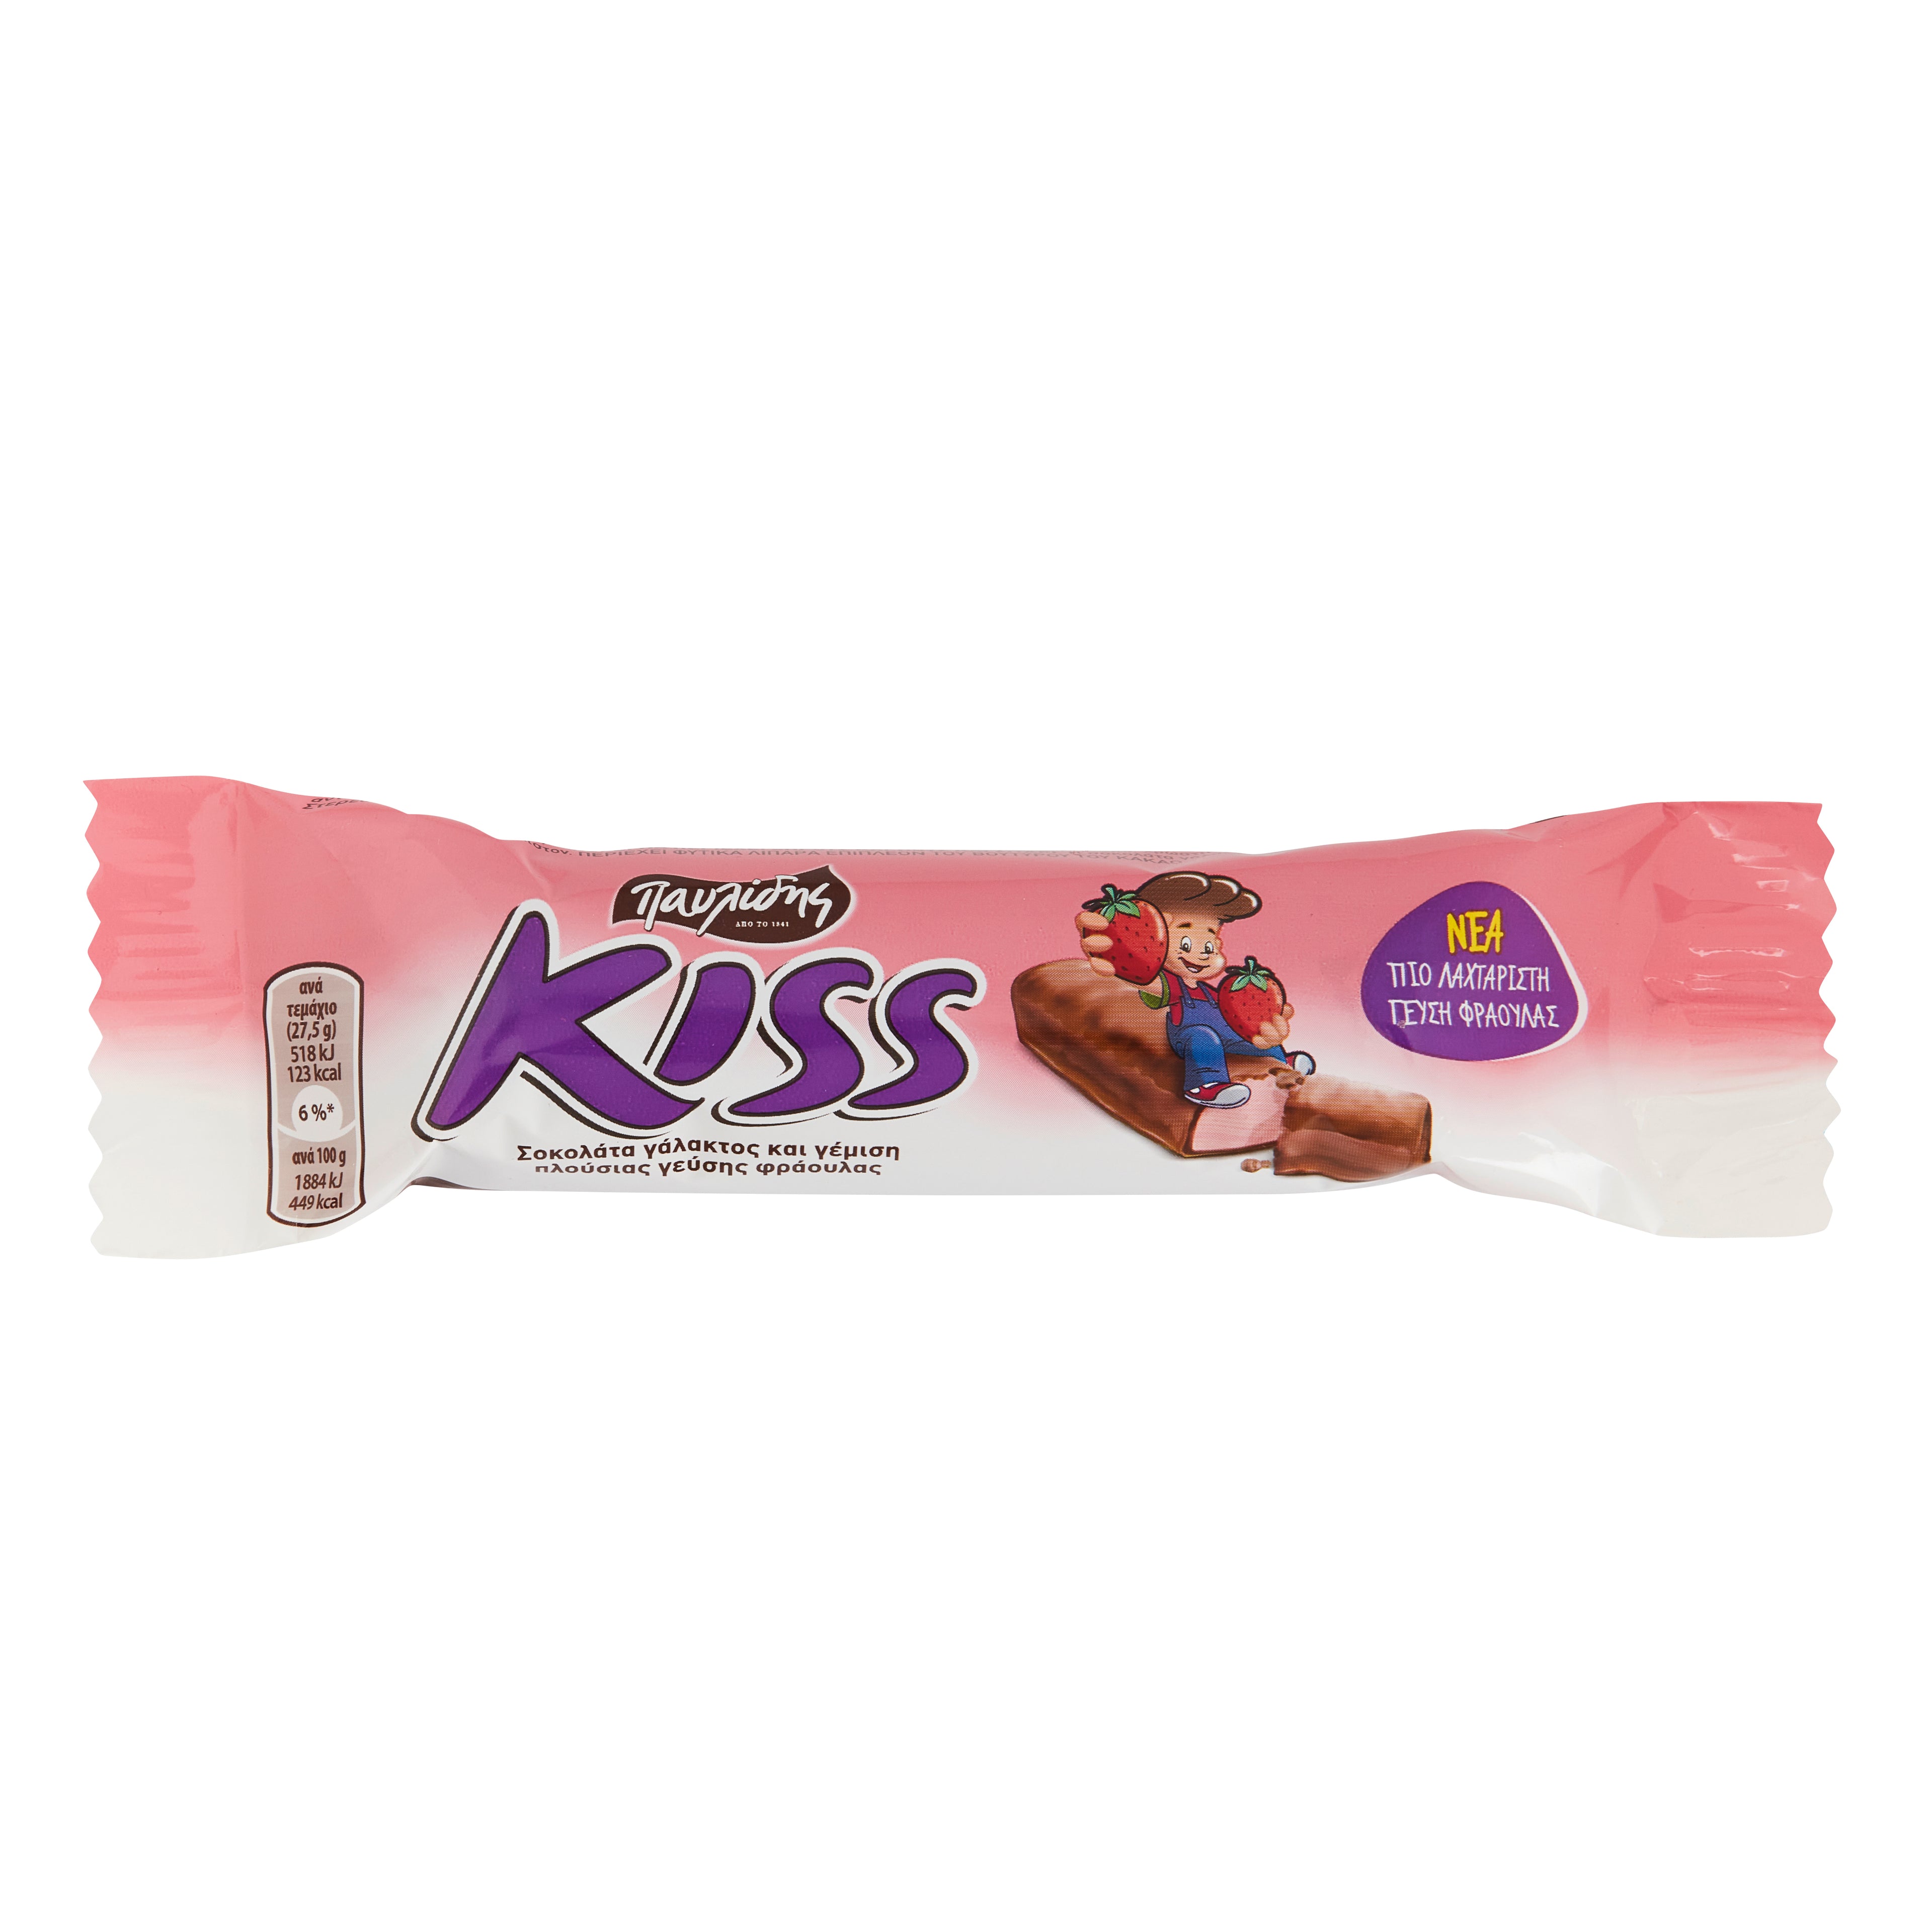 Kiss Schokoriegel mit Erdbeerfüllung Pavlidis 27,5 g